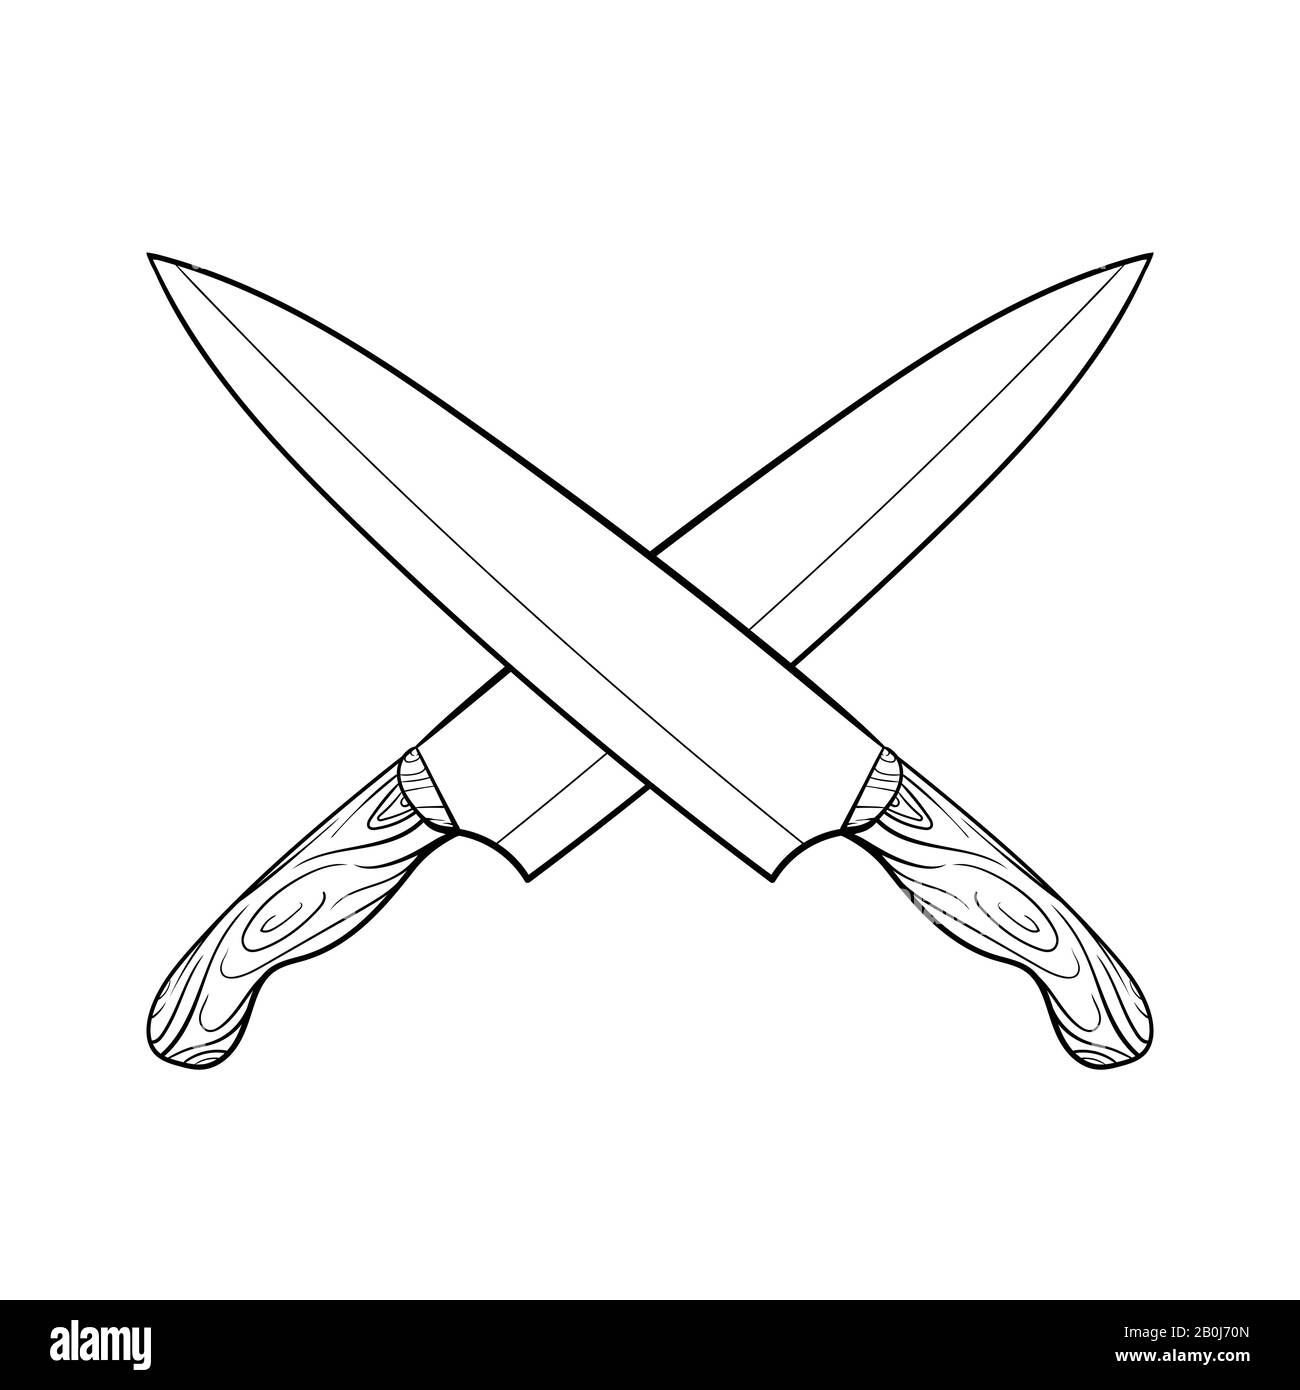 cuchillo de cocina cruzado dibujo a mano vector de dibujos animados e  ilustración, dibujo a mano, estilo de croquis, aislado sobre fondo blanco  Imagen Vector de stock - Alamy